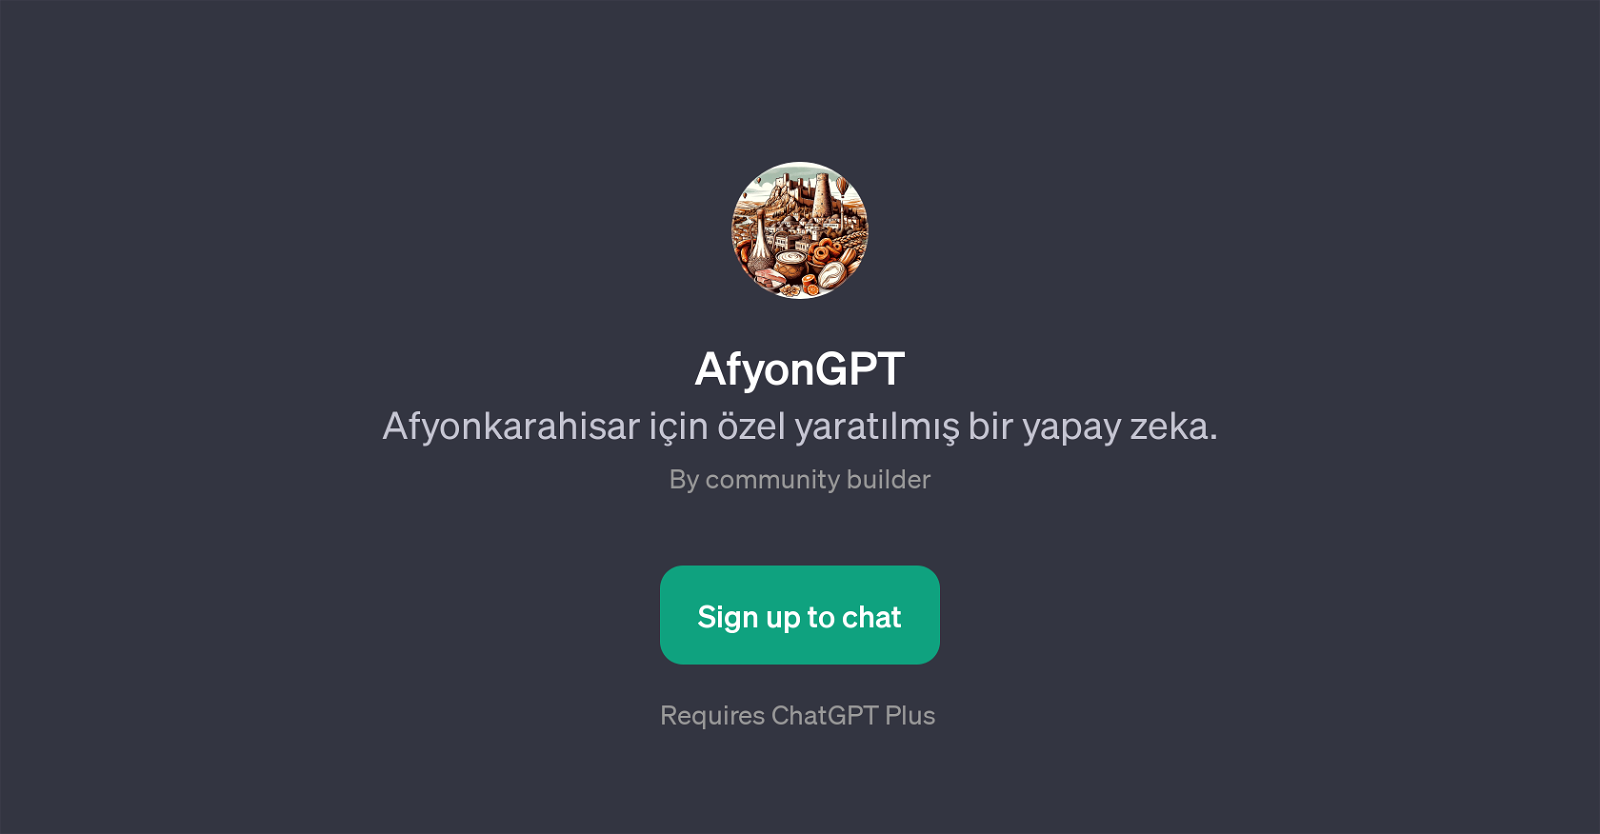 AfyonGPT website